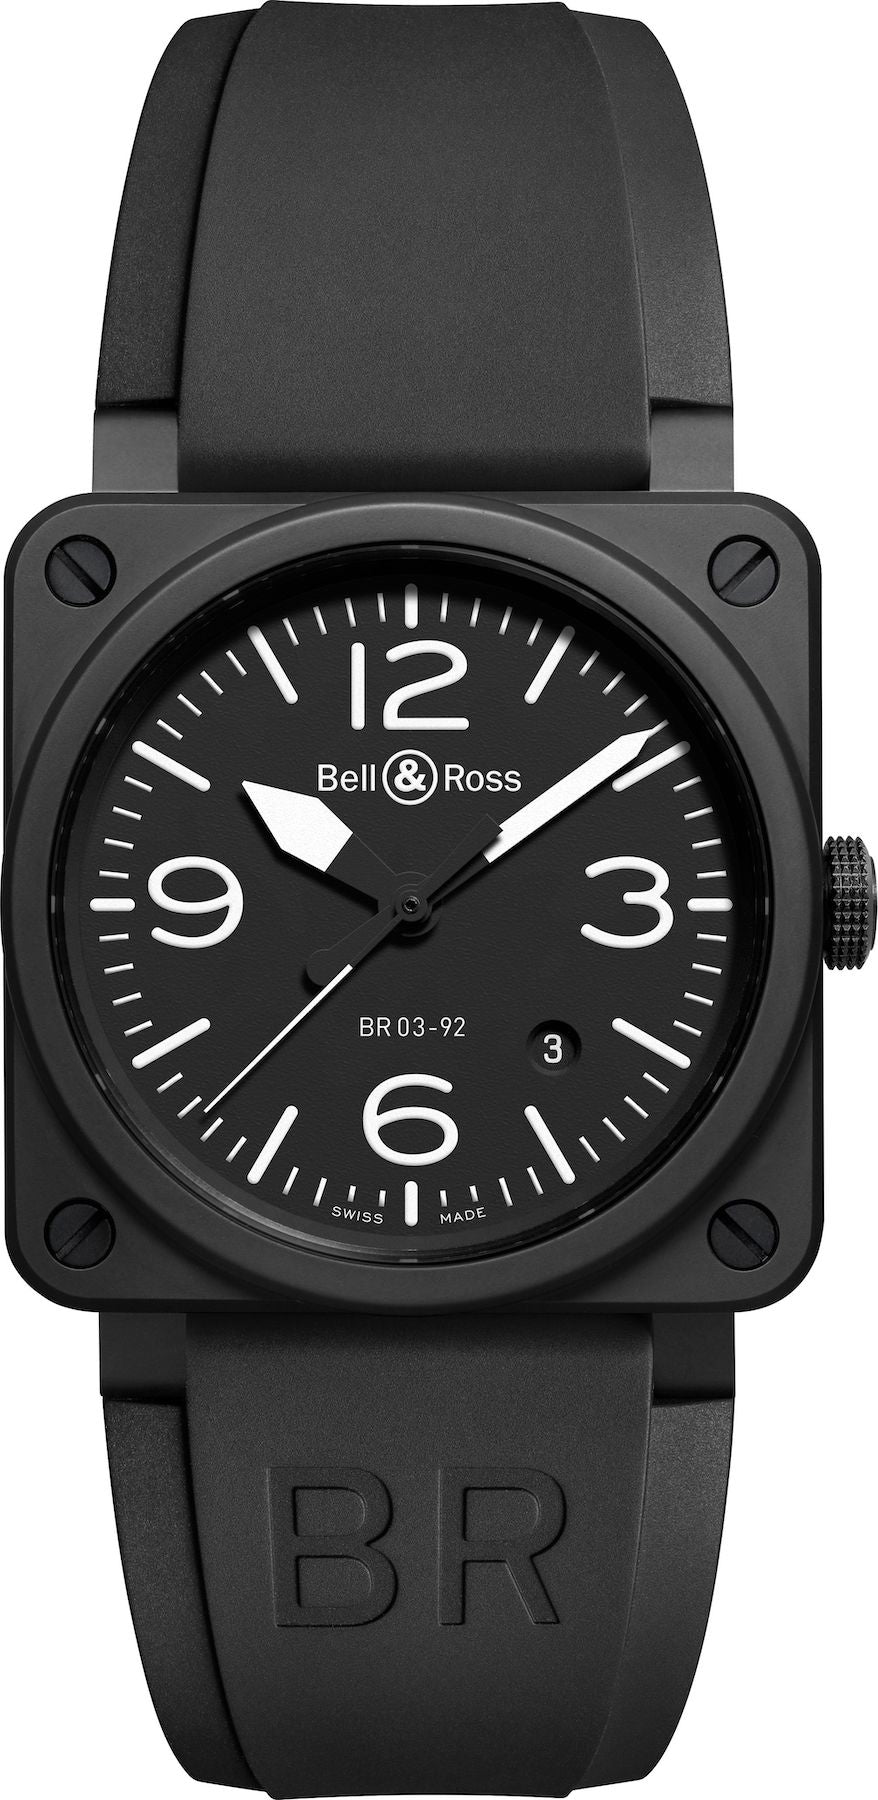 Photos - Wrist Watch Bell & Ross Watch BR 03 92 Black Matte BR-036 